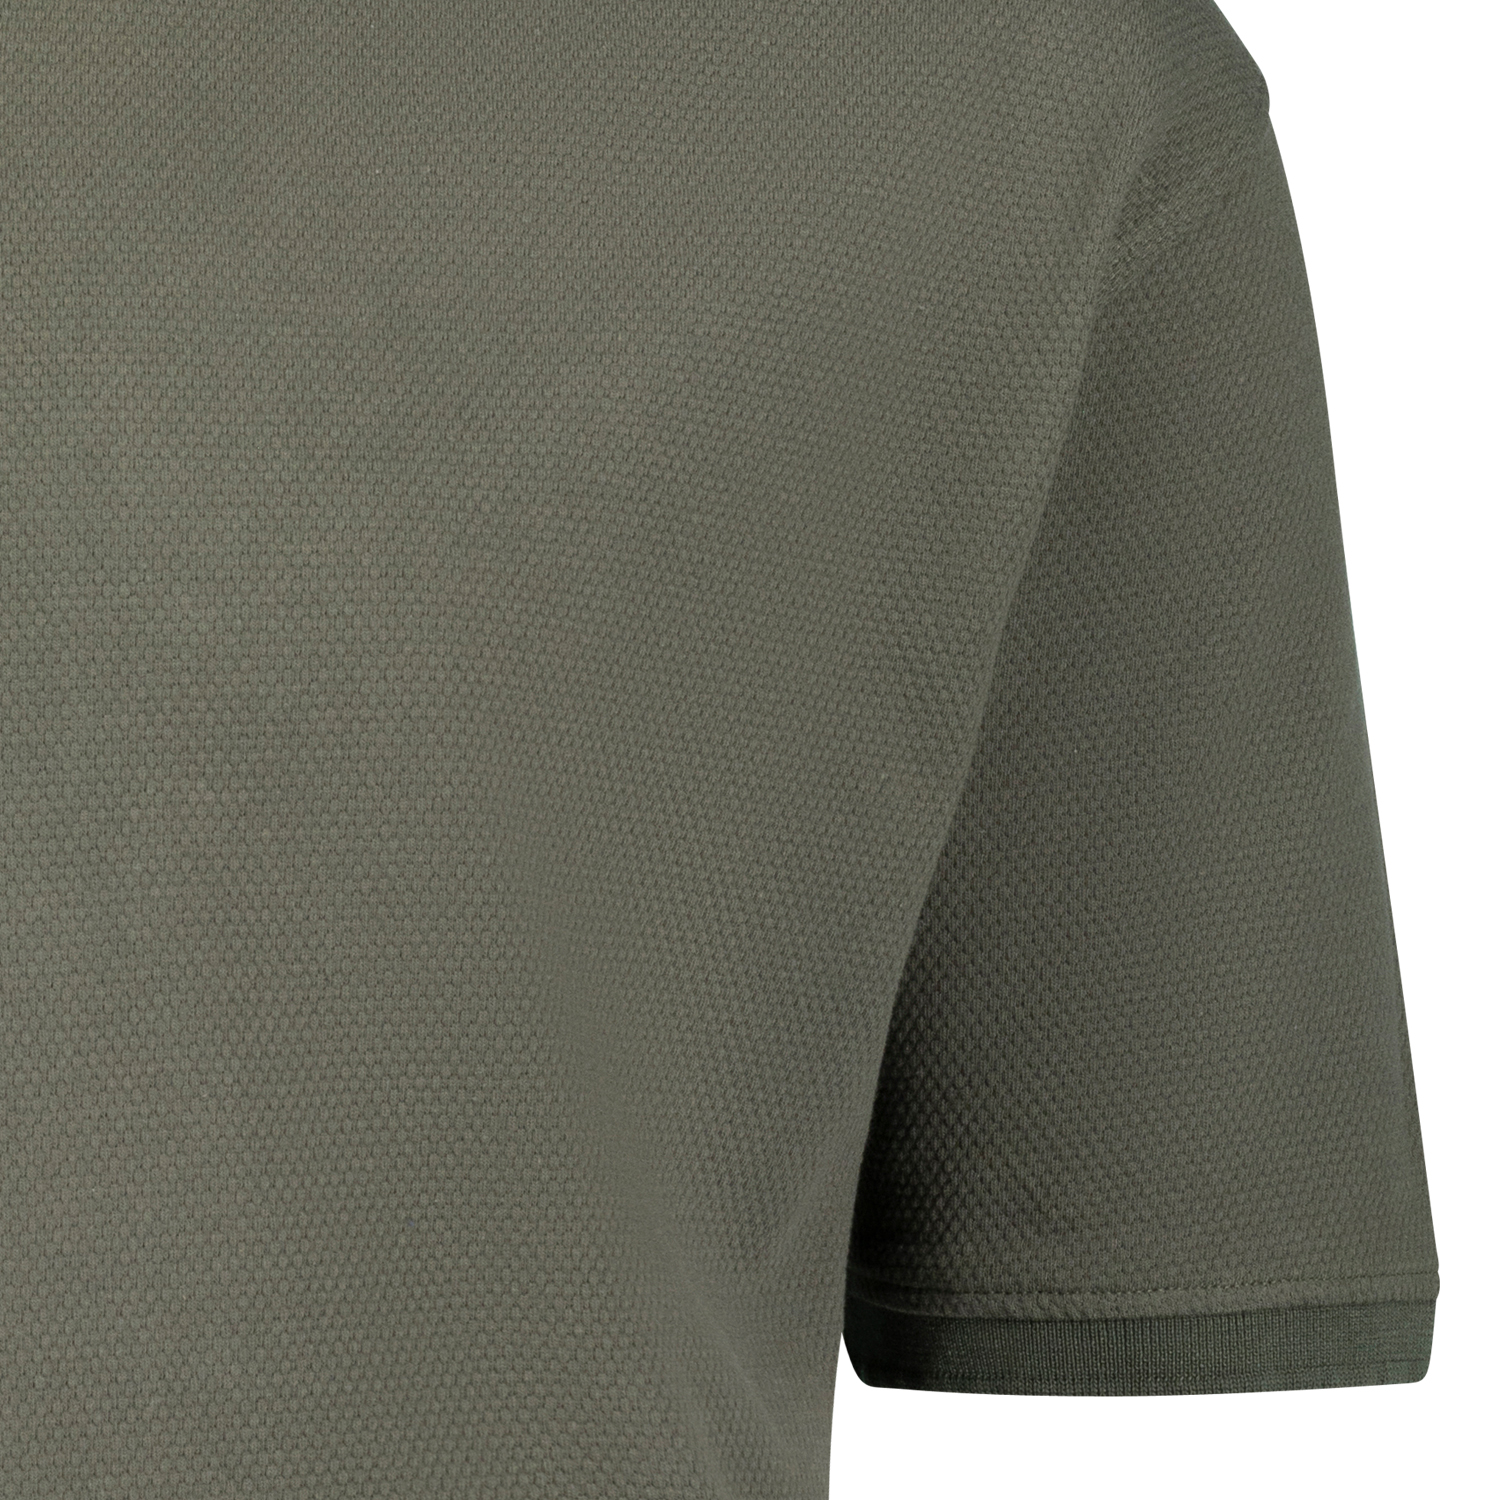 Poloshirt kurzarm aus Waffelpiqué für Herren oliv REGULAR FIT von ADAMO Serie "Stephan" in Übergrößen bis 10XL